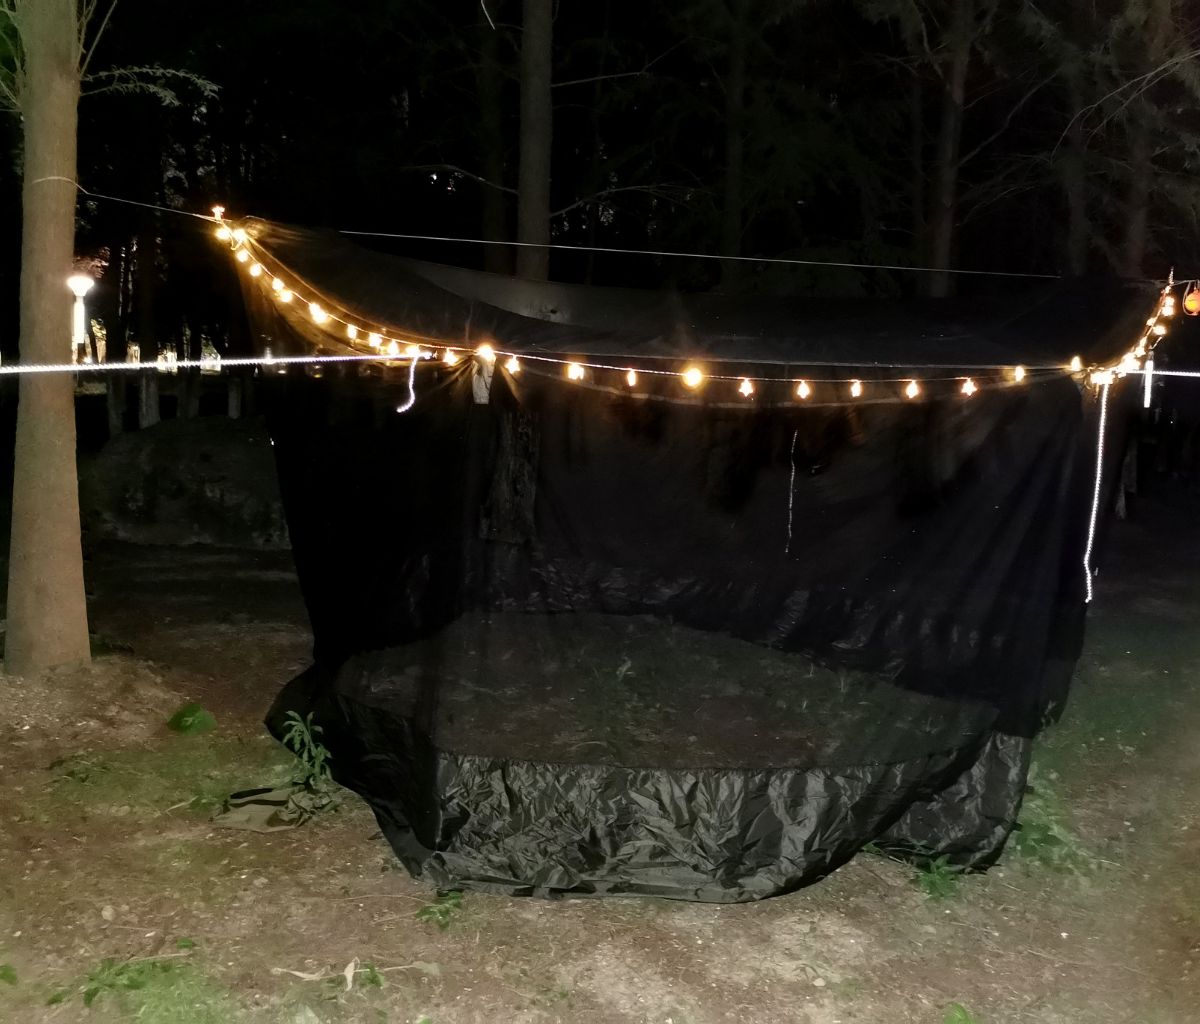 Camper awning lights